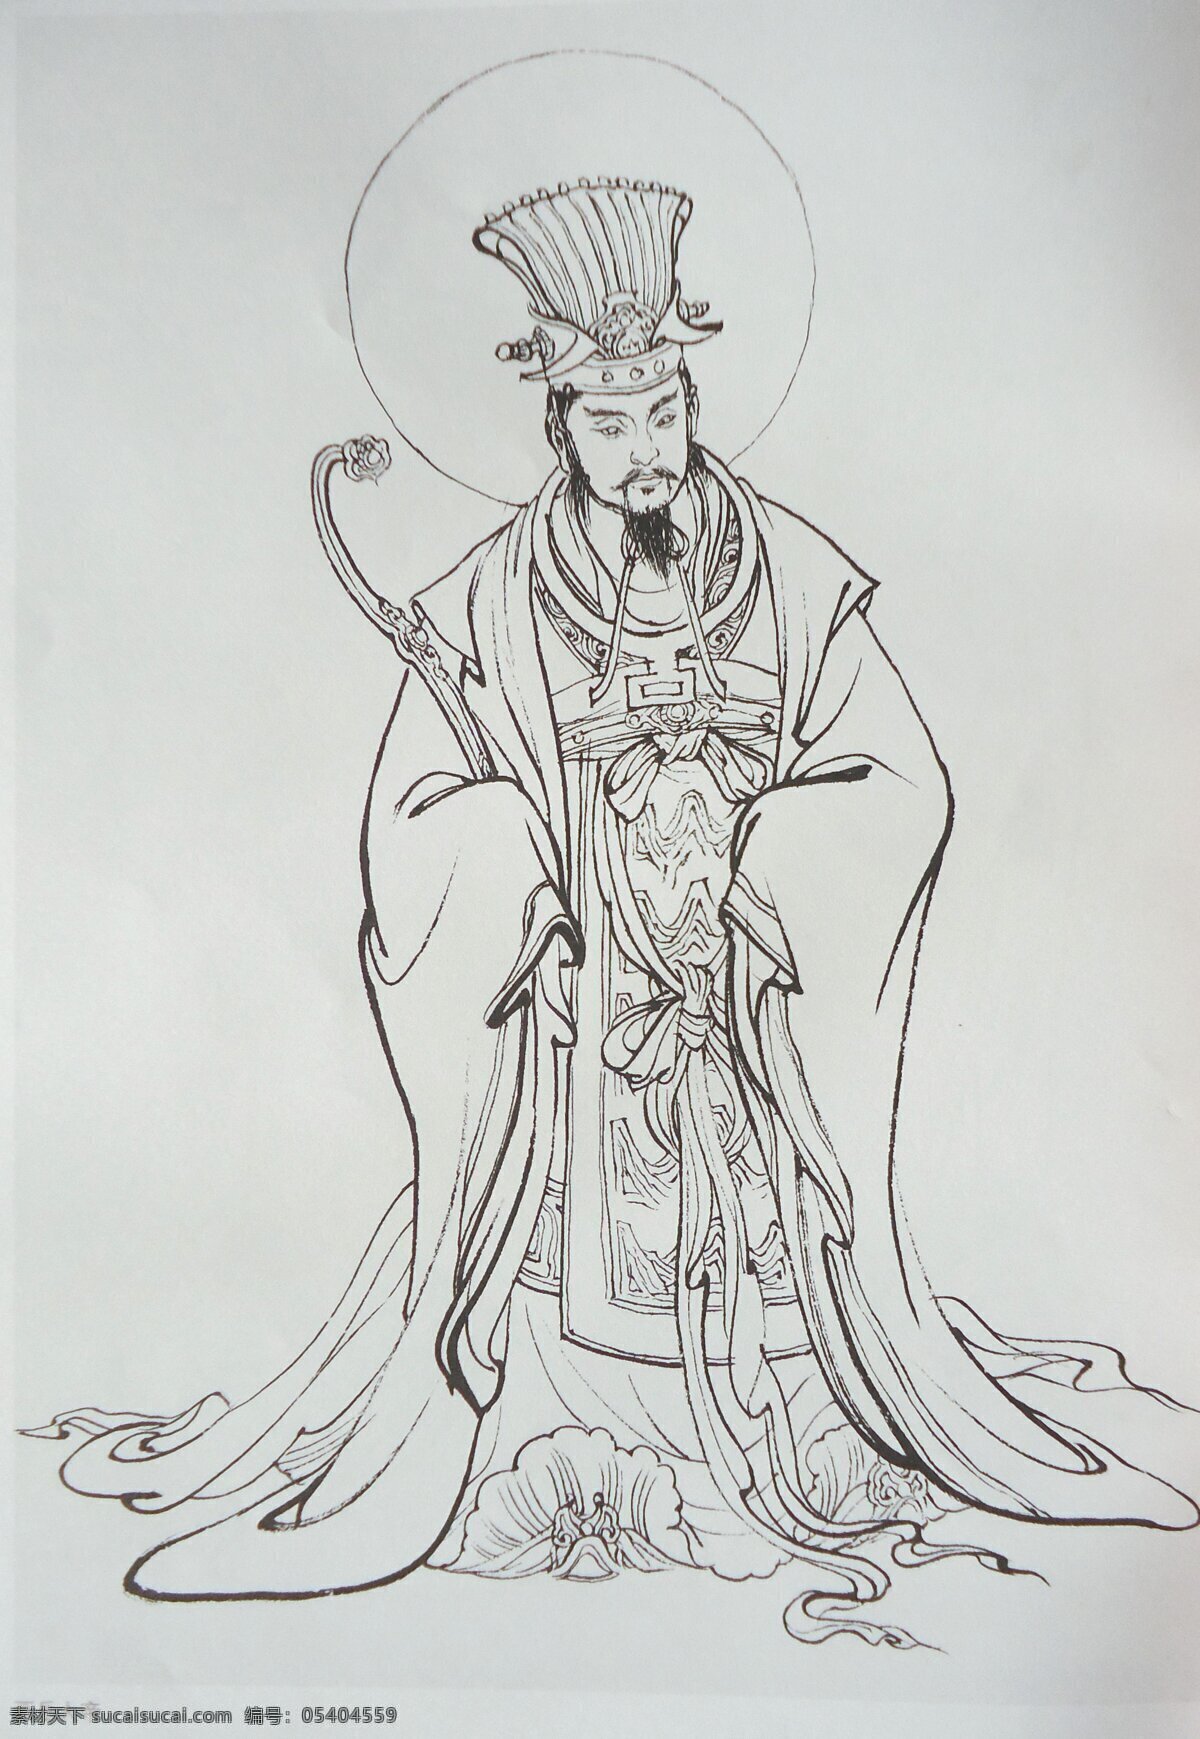 五岳大帝 西岳大帝 神话人物 工笔画 绘画 美术 白描 线描 李云中 传统人物画 绘画书法 文化艺术